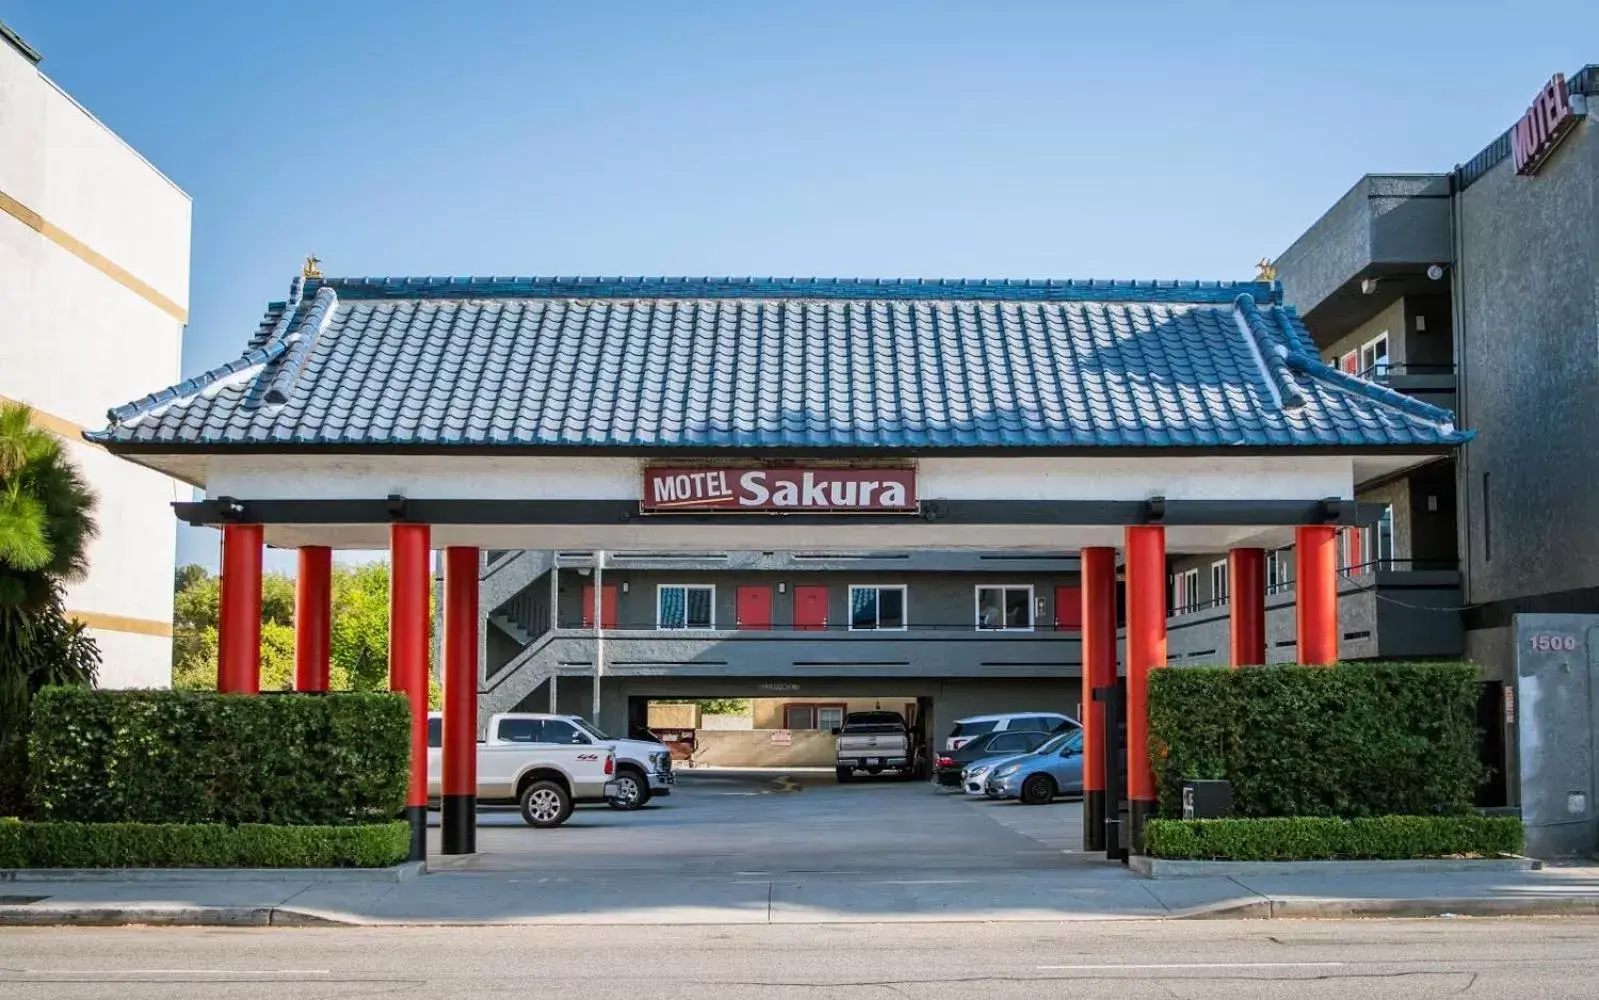 Property Building in Motel Sakura